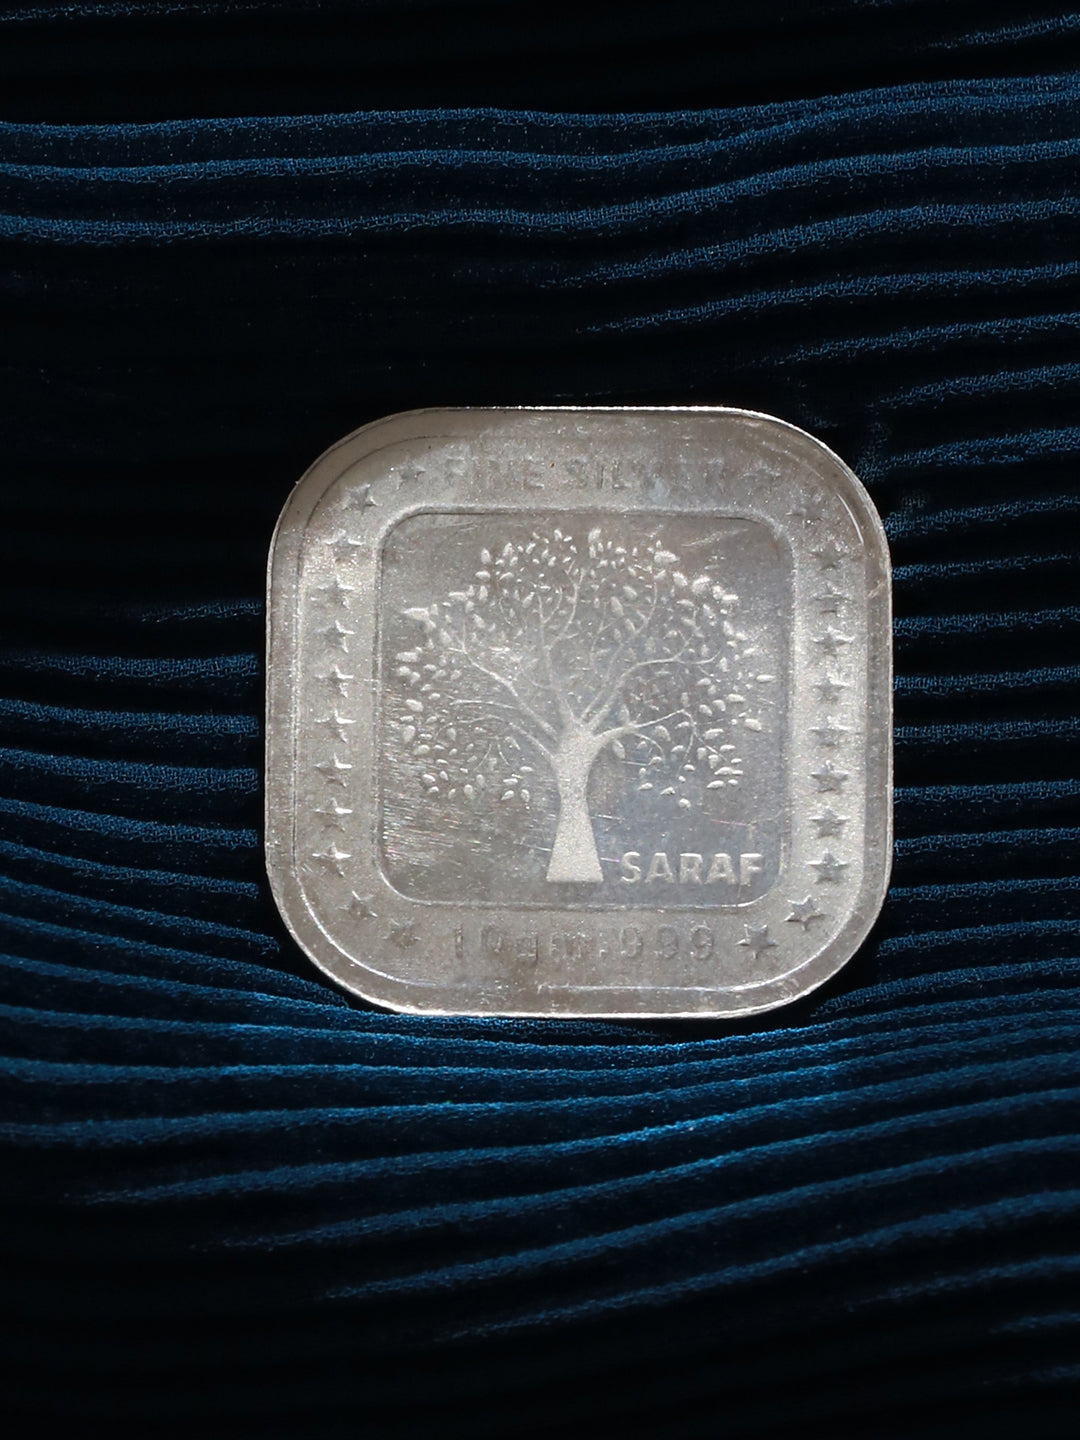 999 Silver Emperor George Square 10 gram Silver Coin